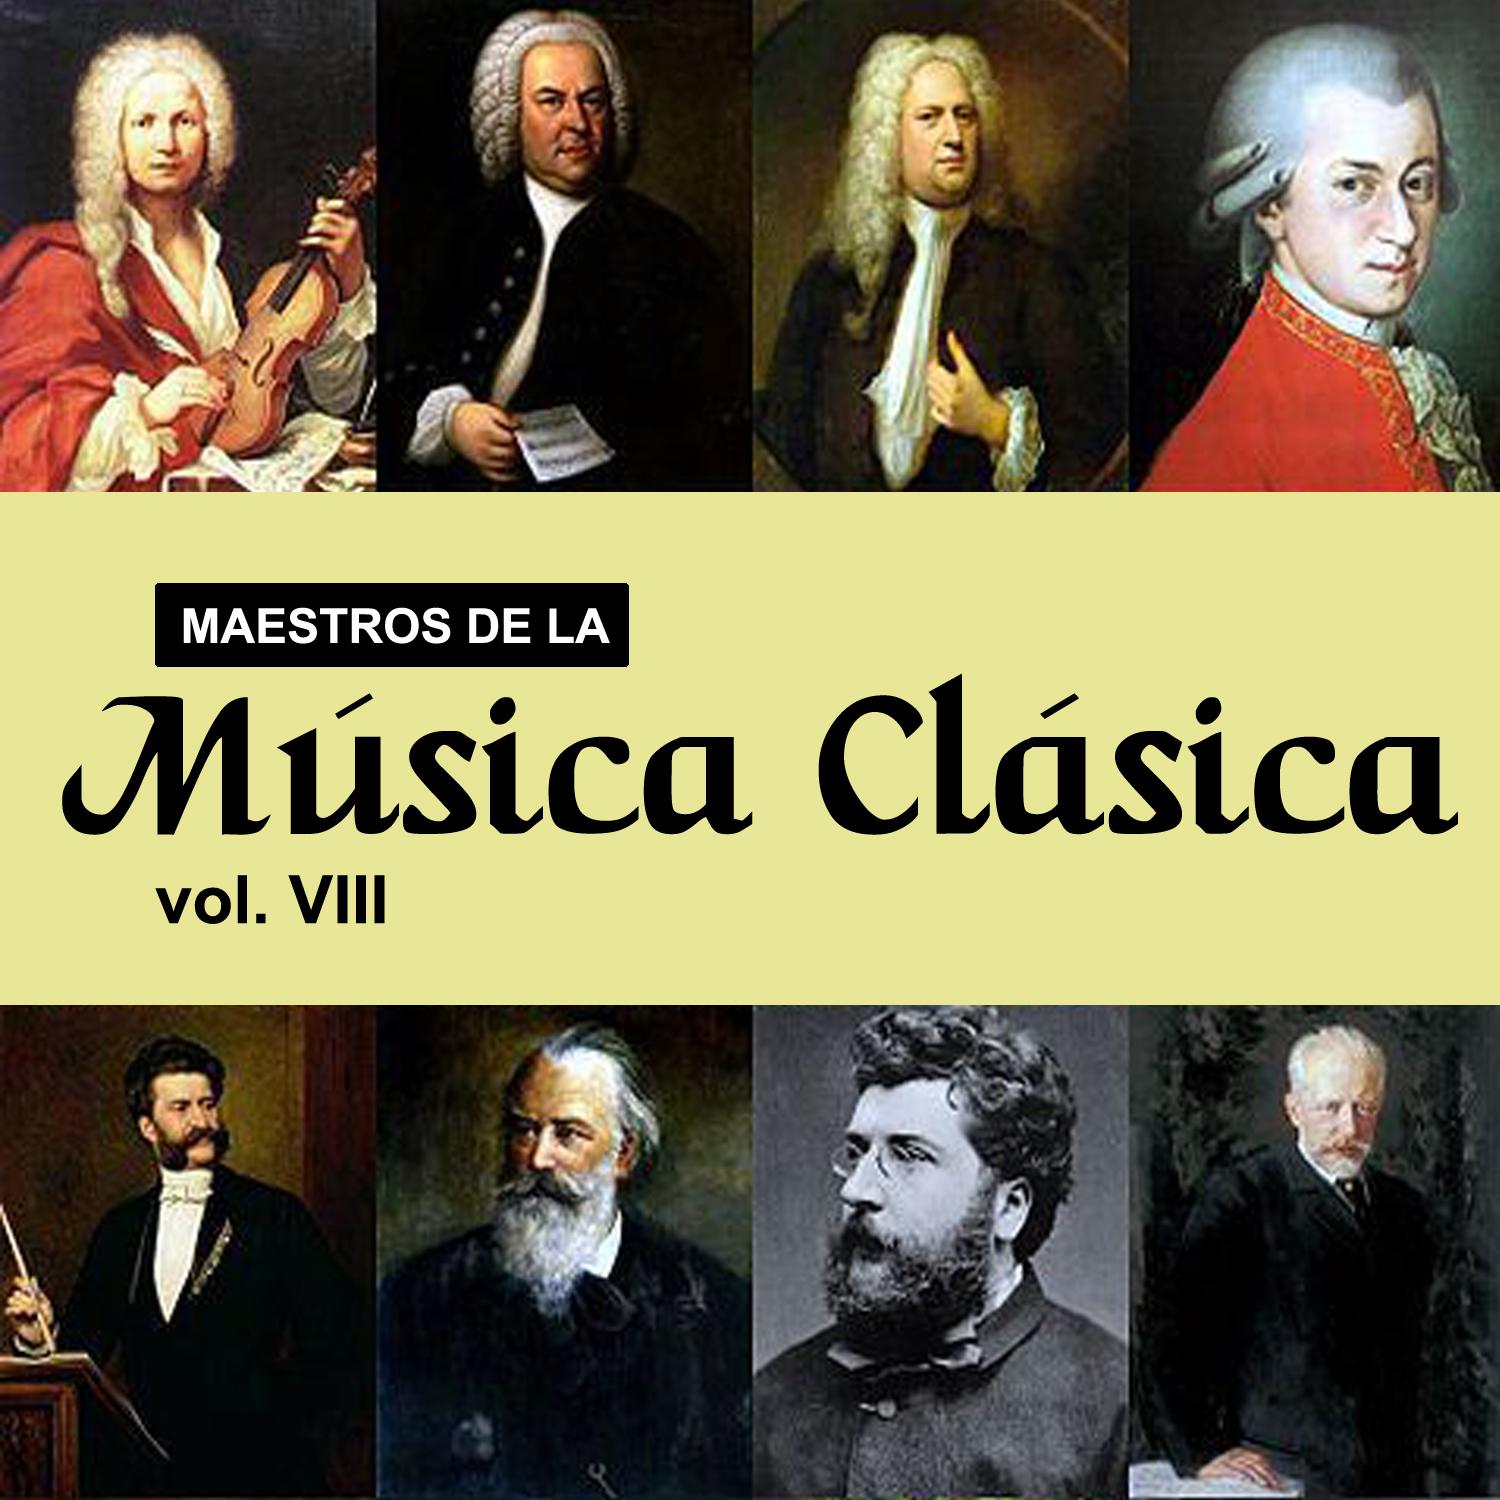 Maestros de la Música Clásica, Vol. VIII